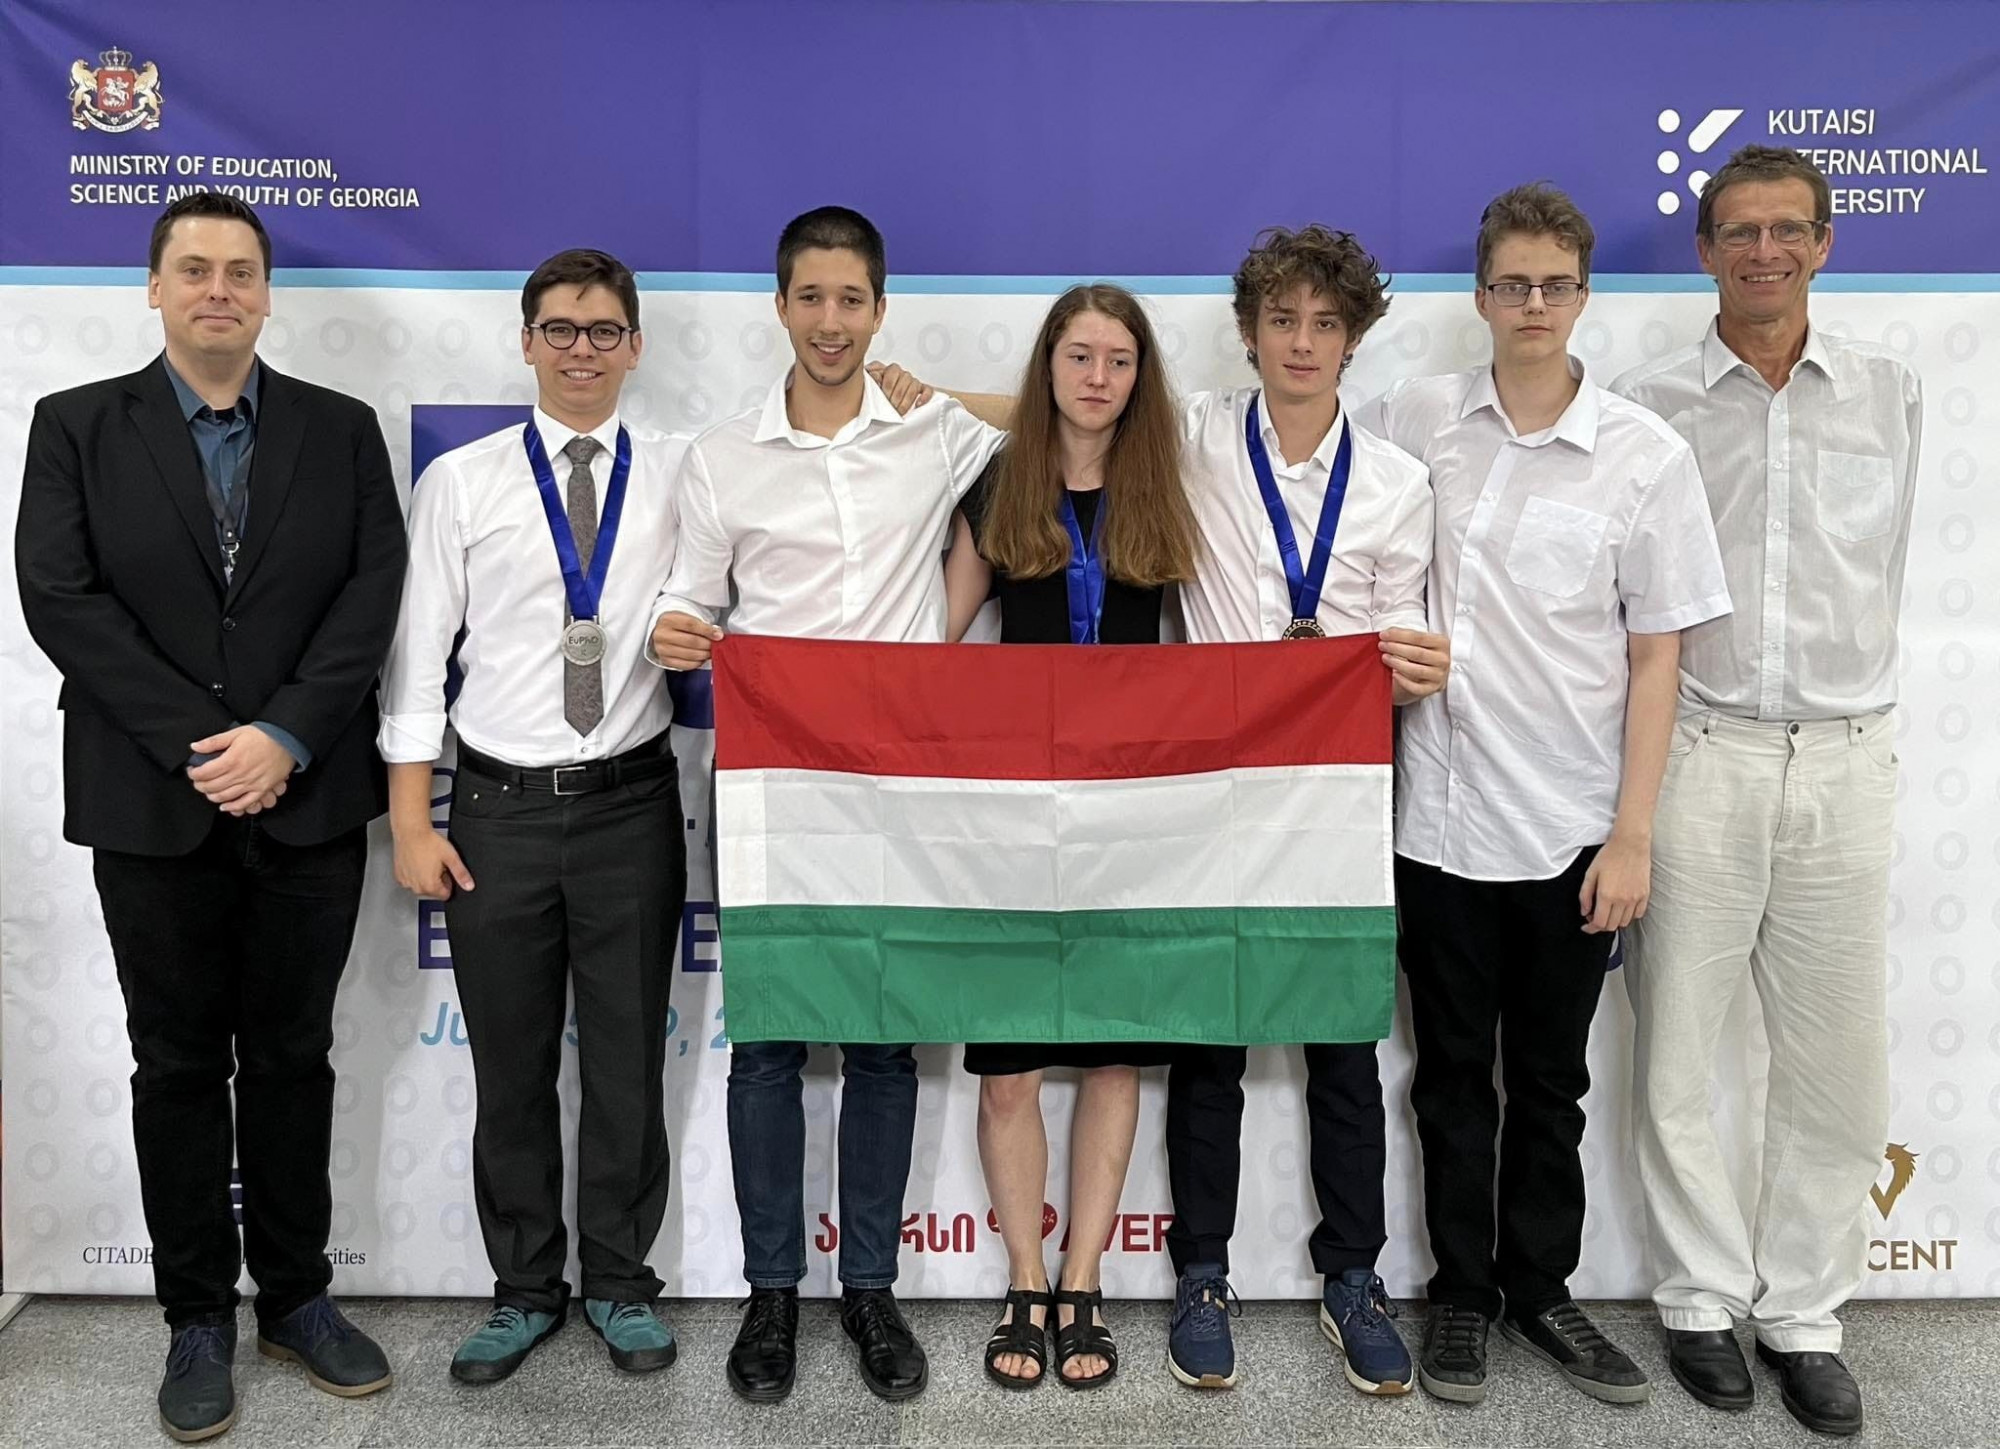 Két magyar ezüst- és egy bronzérem az Európai Fizikai Diákolimpián